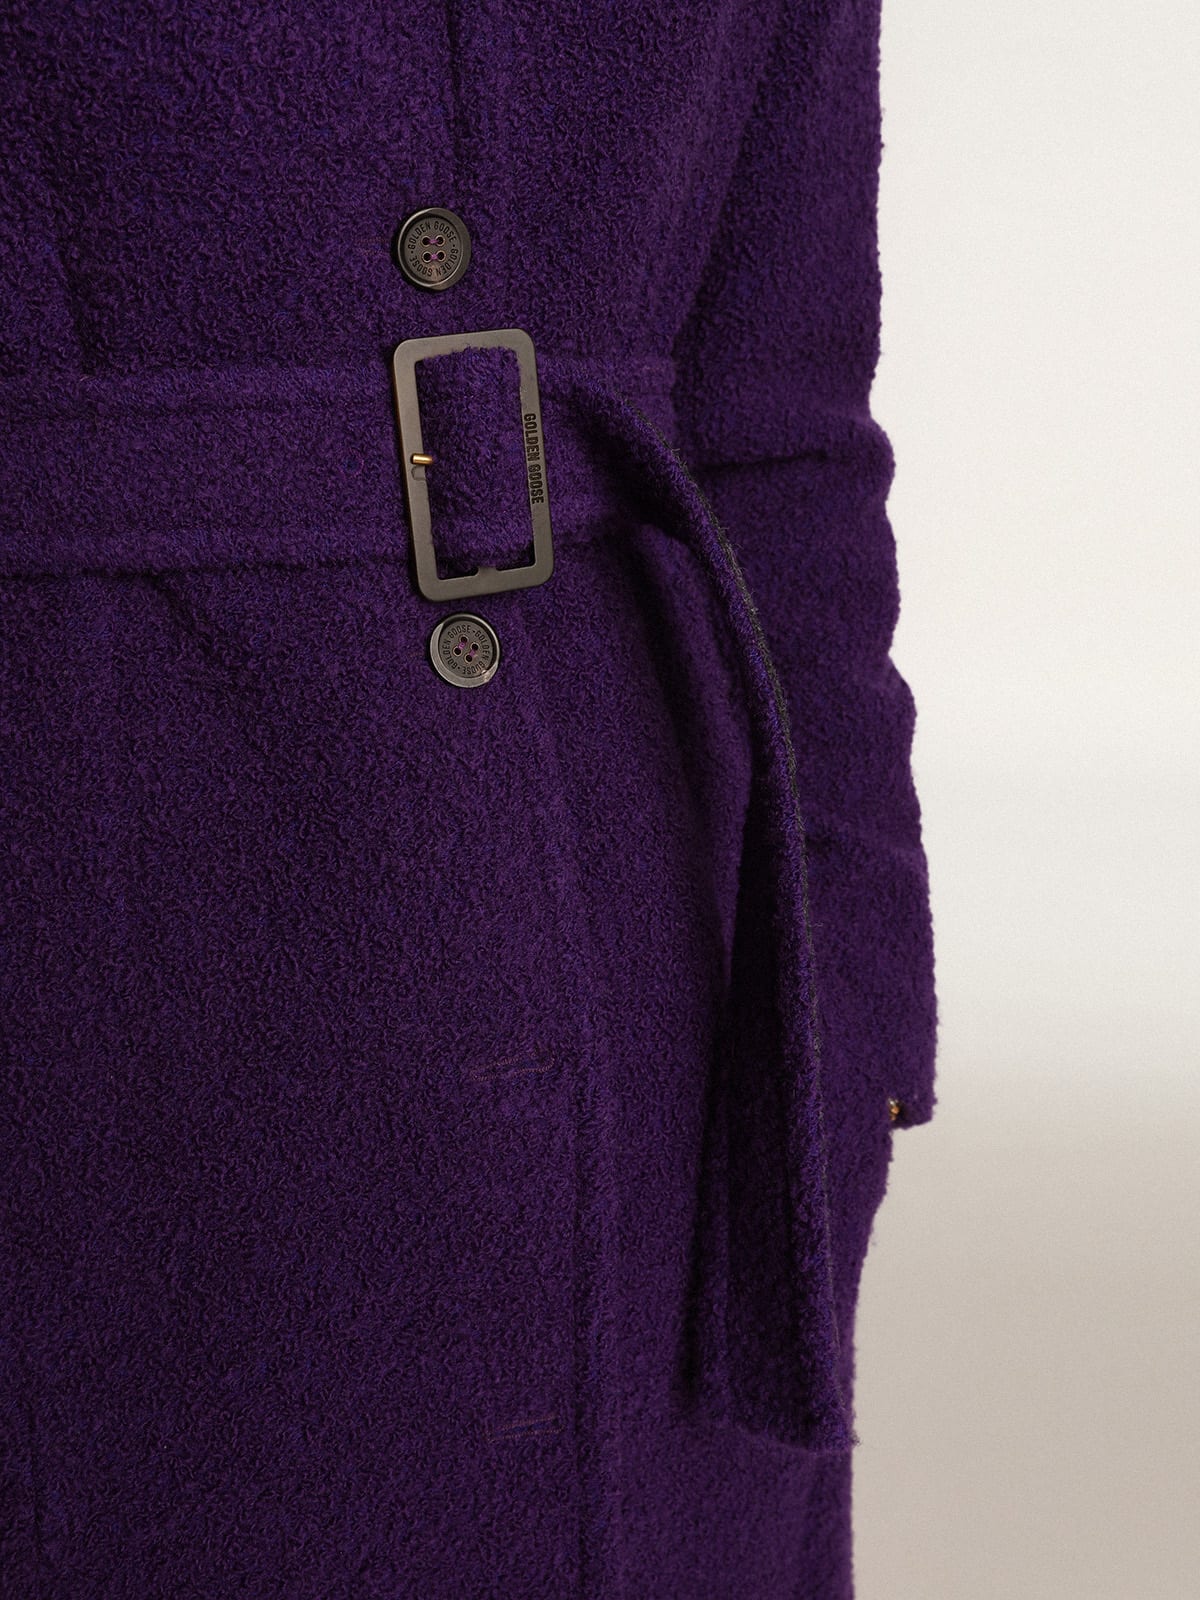 Golden Goose - Women's coat in indigo purple wool with printed lining in 